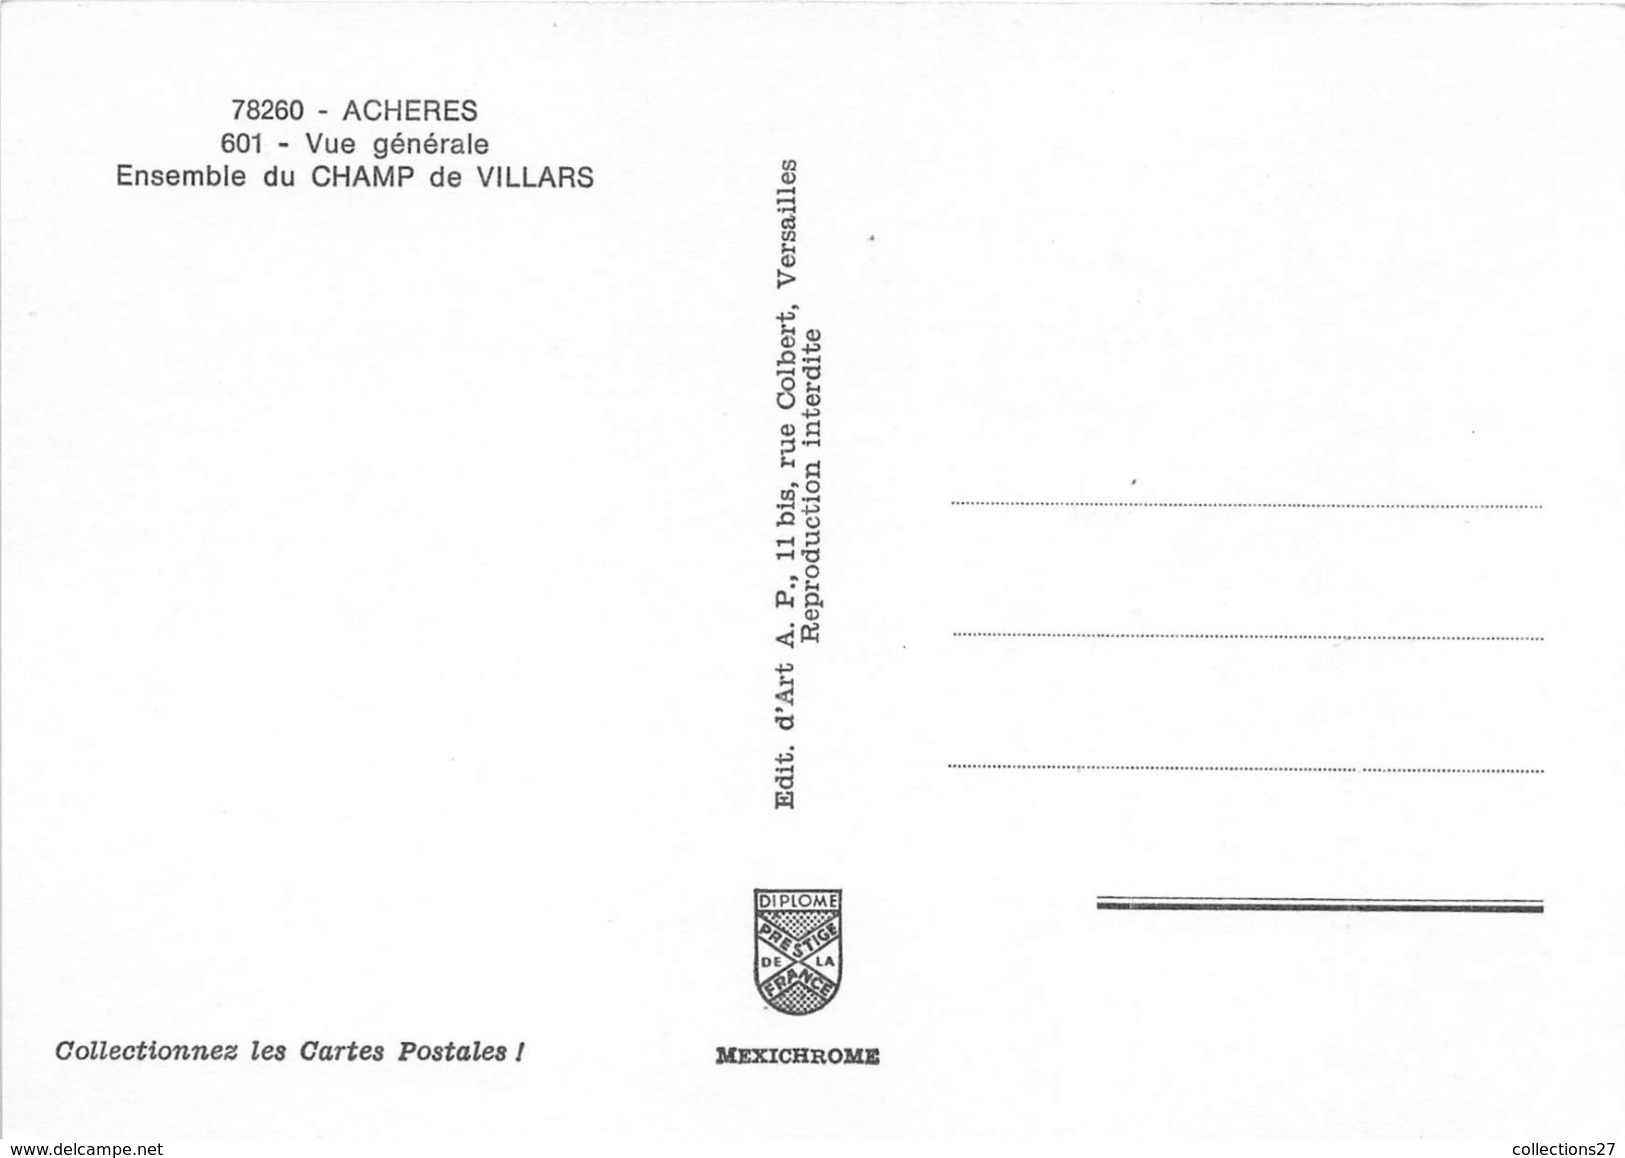 78-ACHERES- VUE GENERALE, ENSEMBLE DU CHAMP DE VILLARS - Acheres